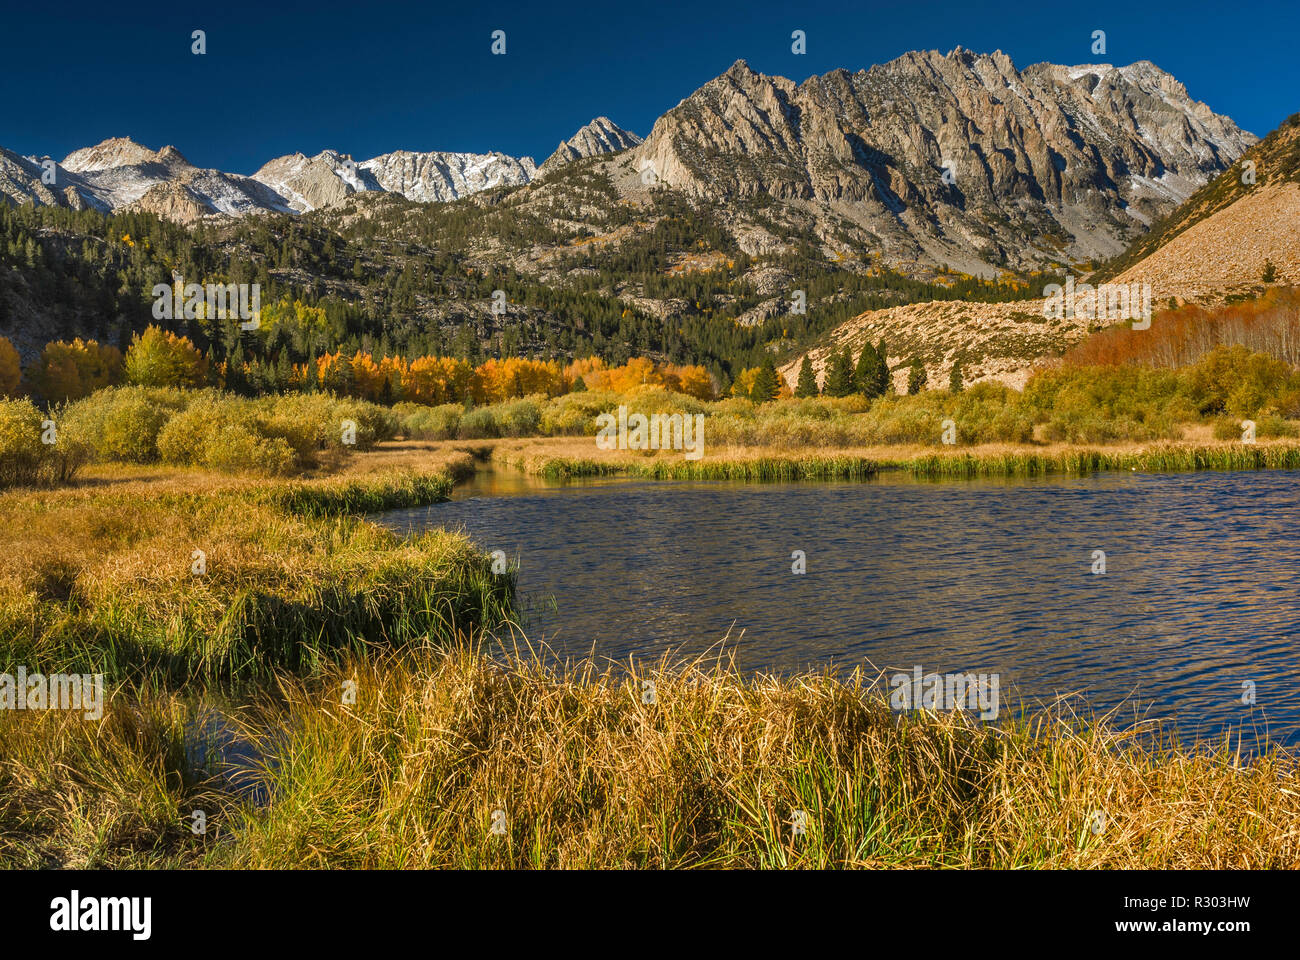 Dans le bassin nord du lac Sabrina en automne Mt. En ce qui concerne l'évolution Lamarck distance Région, John Muir Wilderness, est de la Sierra Nevada, Californie, USA Banque D'Images